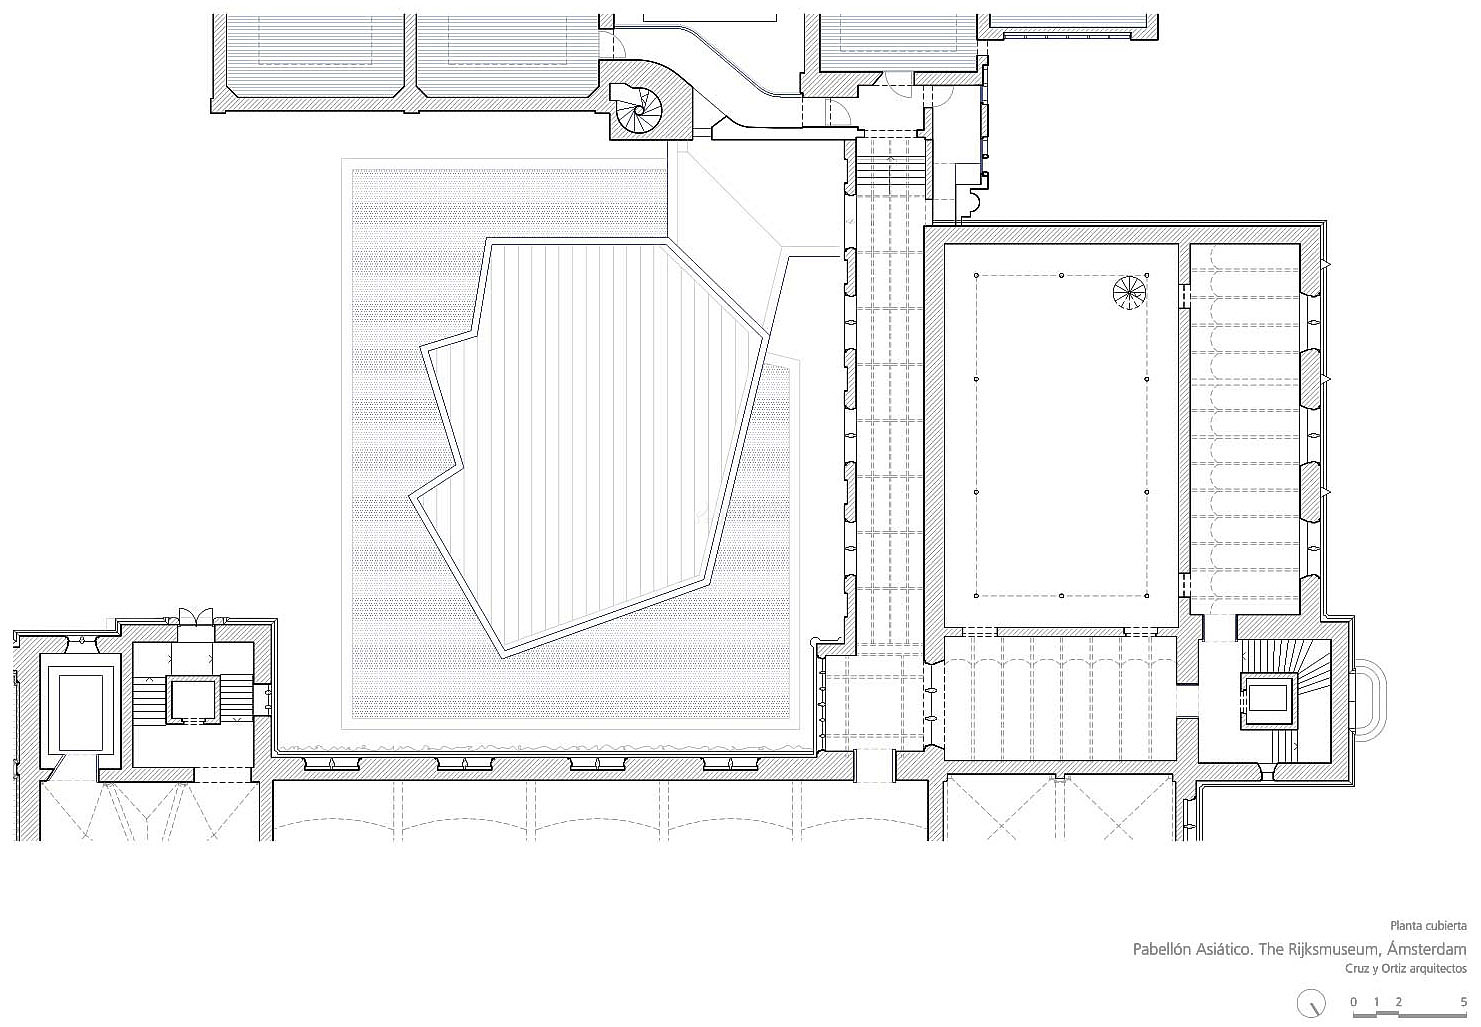 荷兰国家博物馆亚洲展馆之屋顶平面图